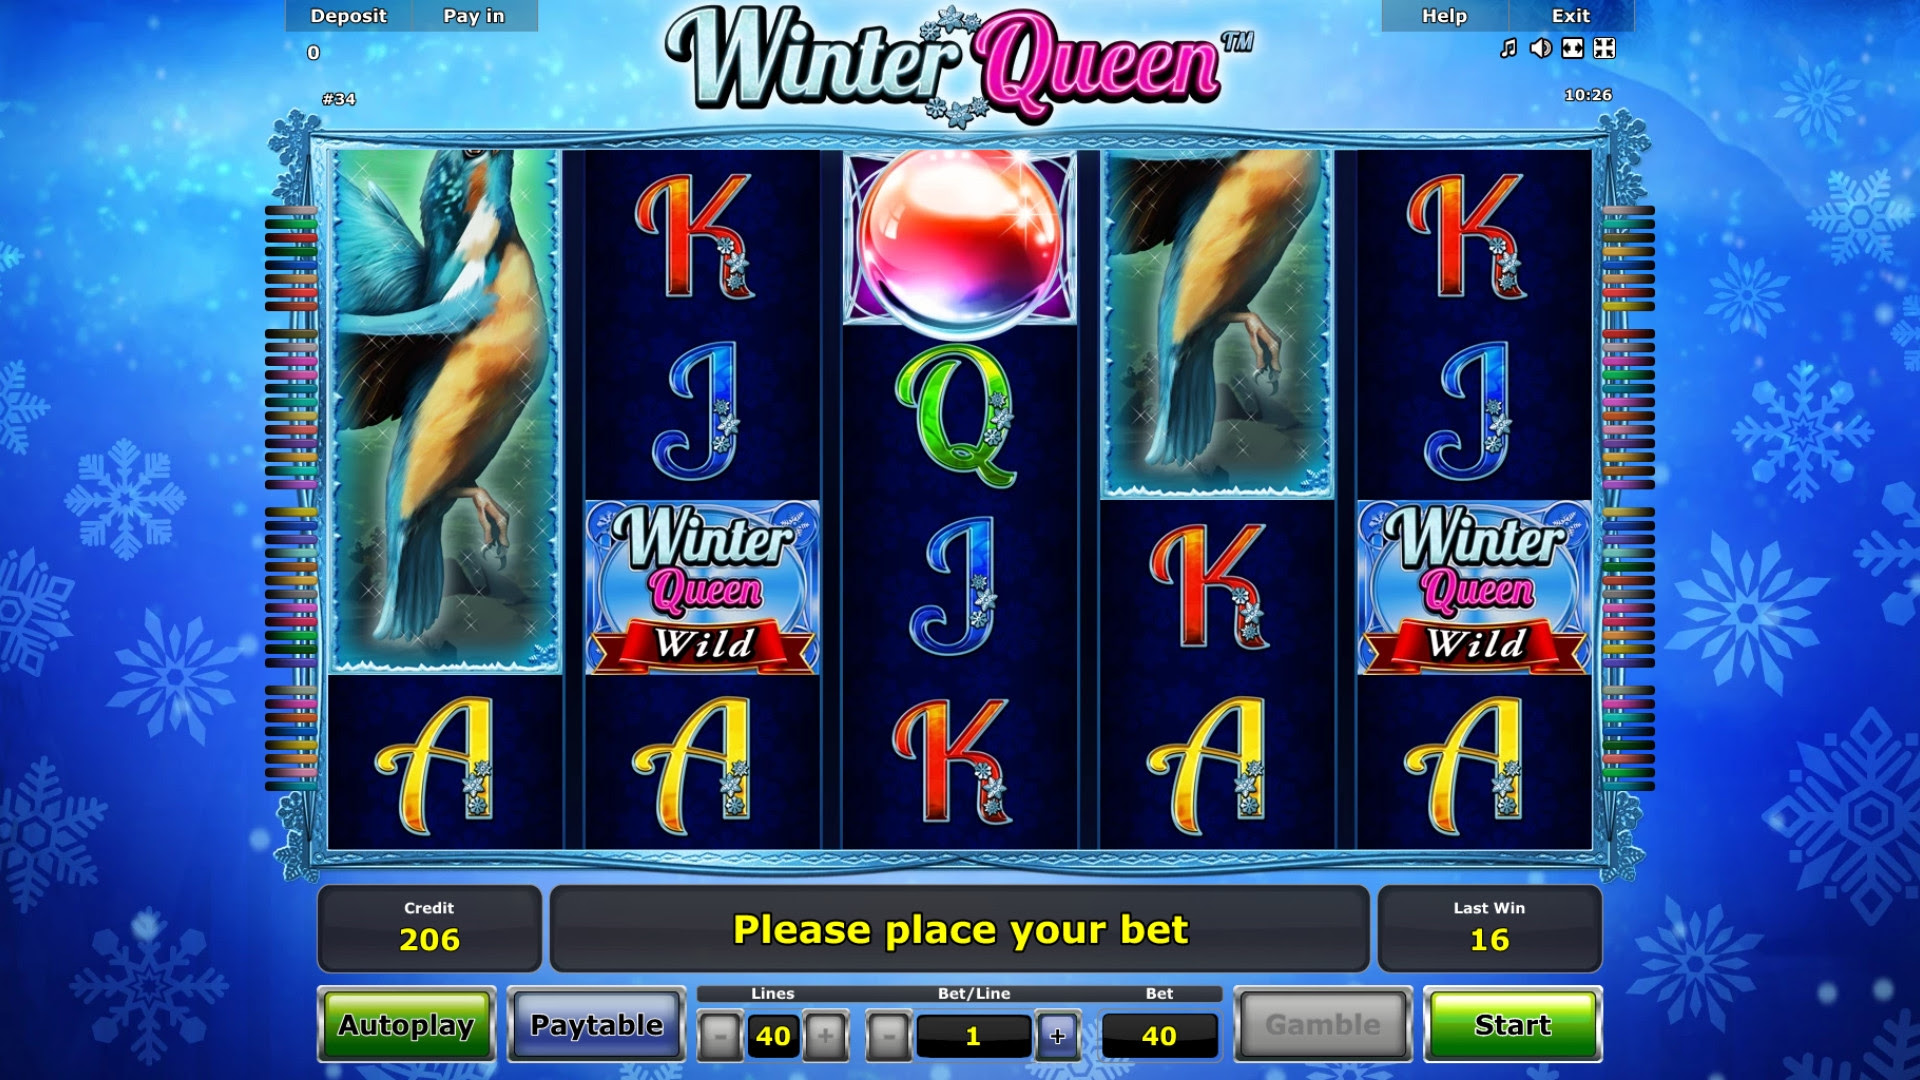 Winter Queen Free Online Slots new online casinos australia 2020 no deposit bonus 